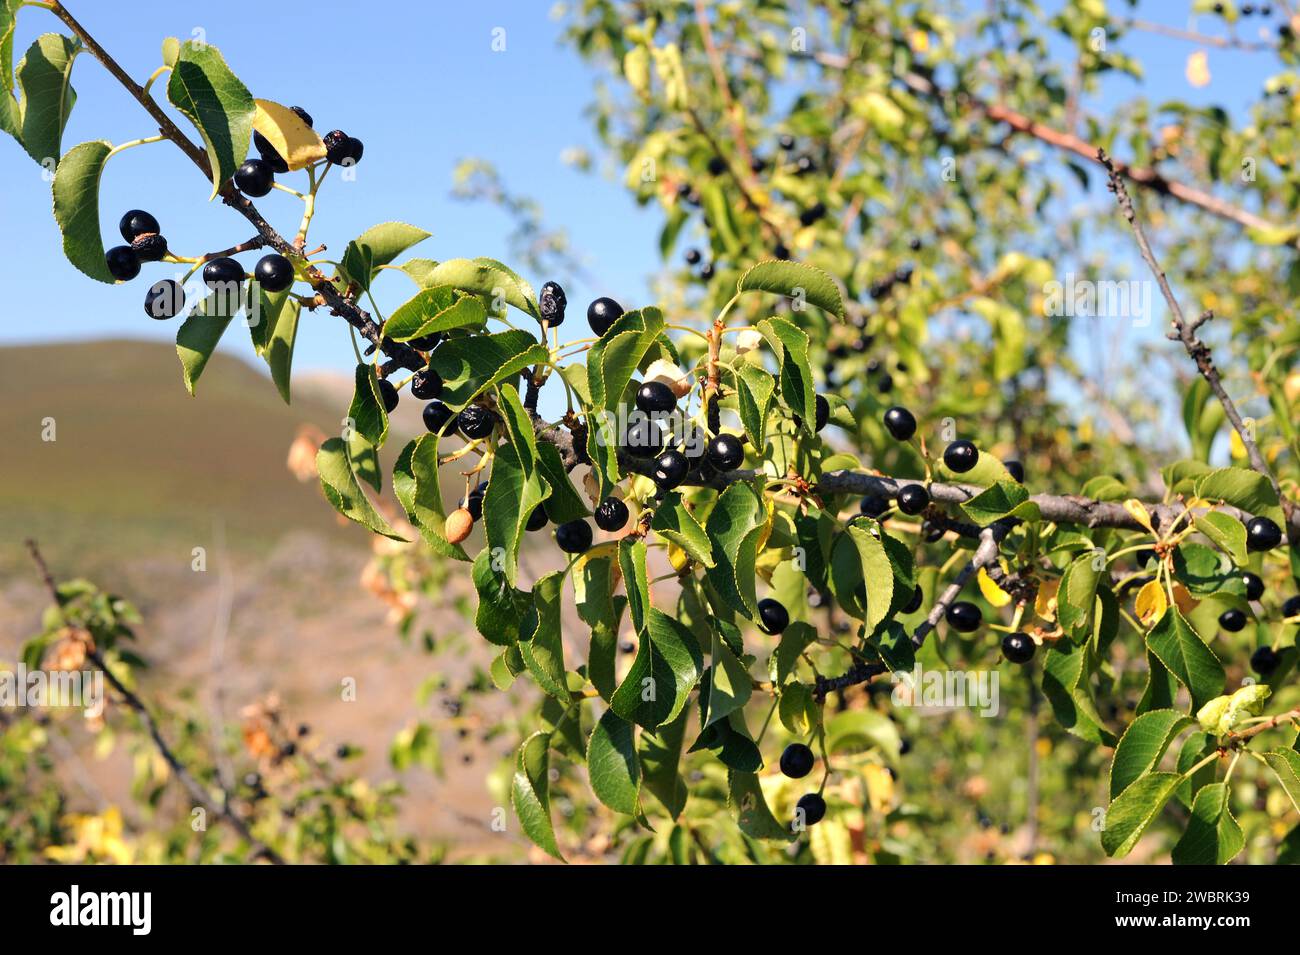 St. Le cerisier de Lucie (Prunus mahaleb) est un arbuste à feuilles caduques ou un petit arbre originaire du bassin méditerranéen. Ses graines fournissent une essence utilisée pour la cuisson. Mat Banque D'Images